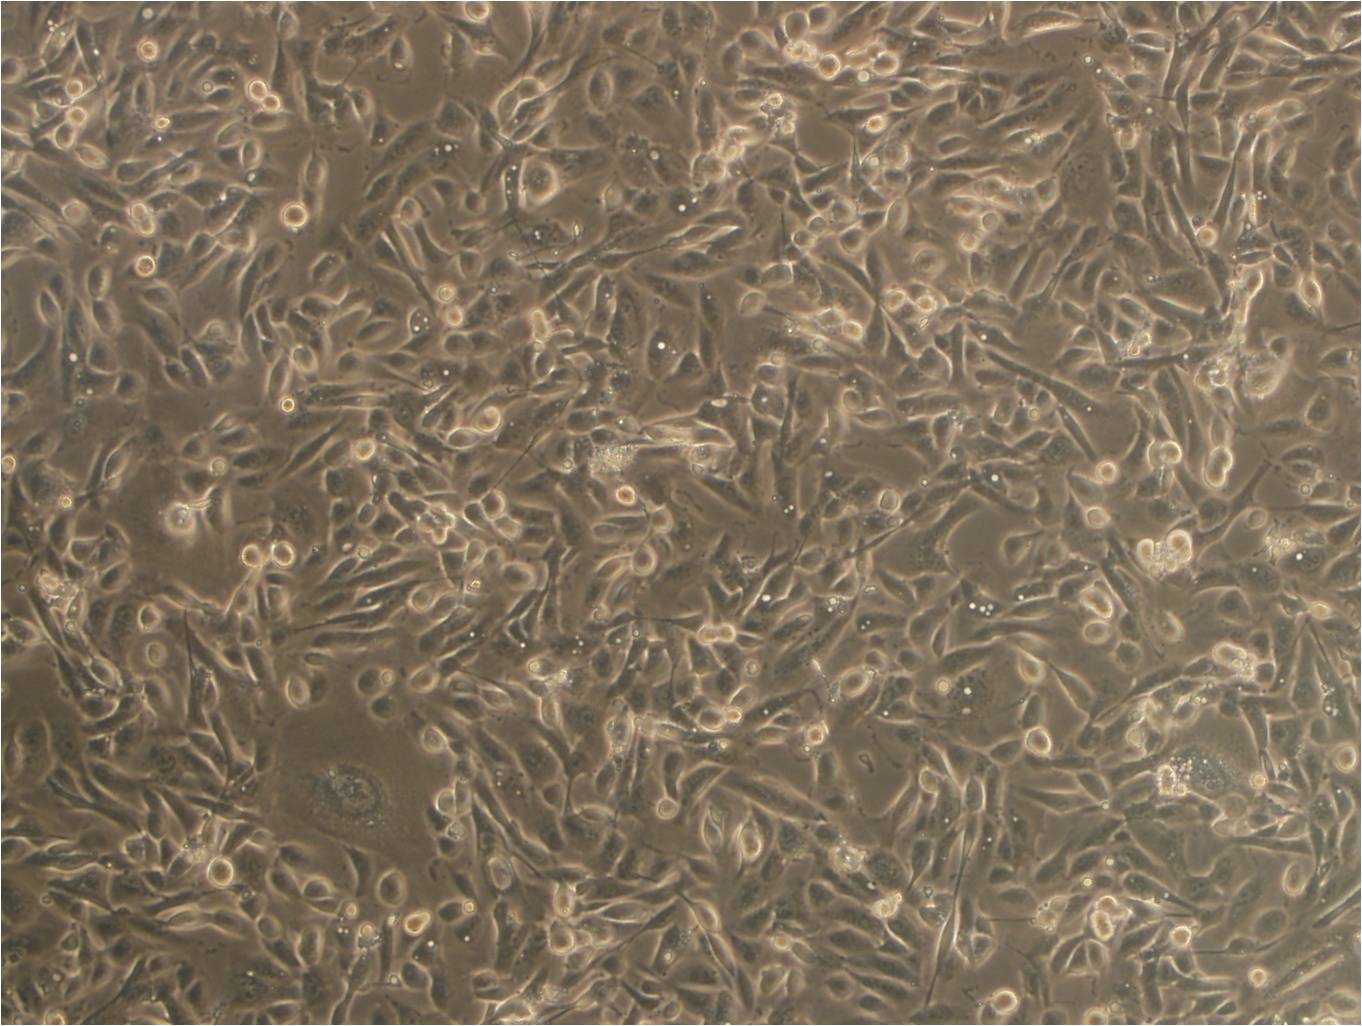 EOMA epithelioid cells小鼠血管内皮瘤细胞系,EOMA epithelioid cells